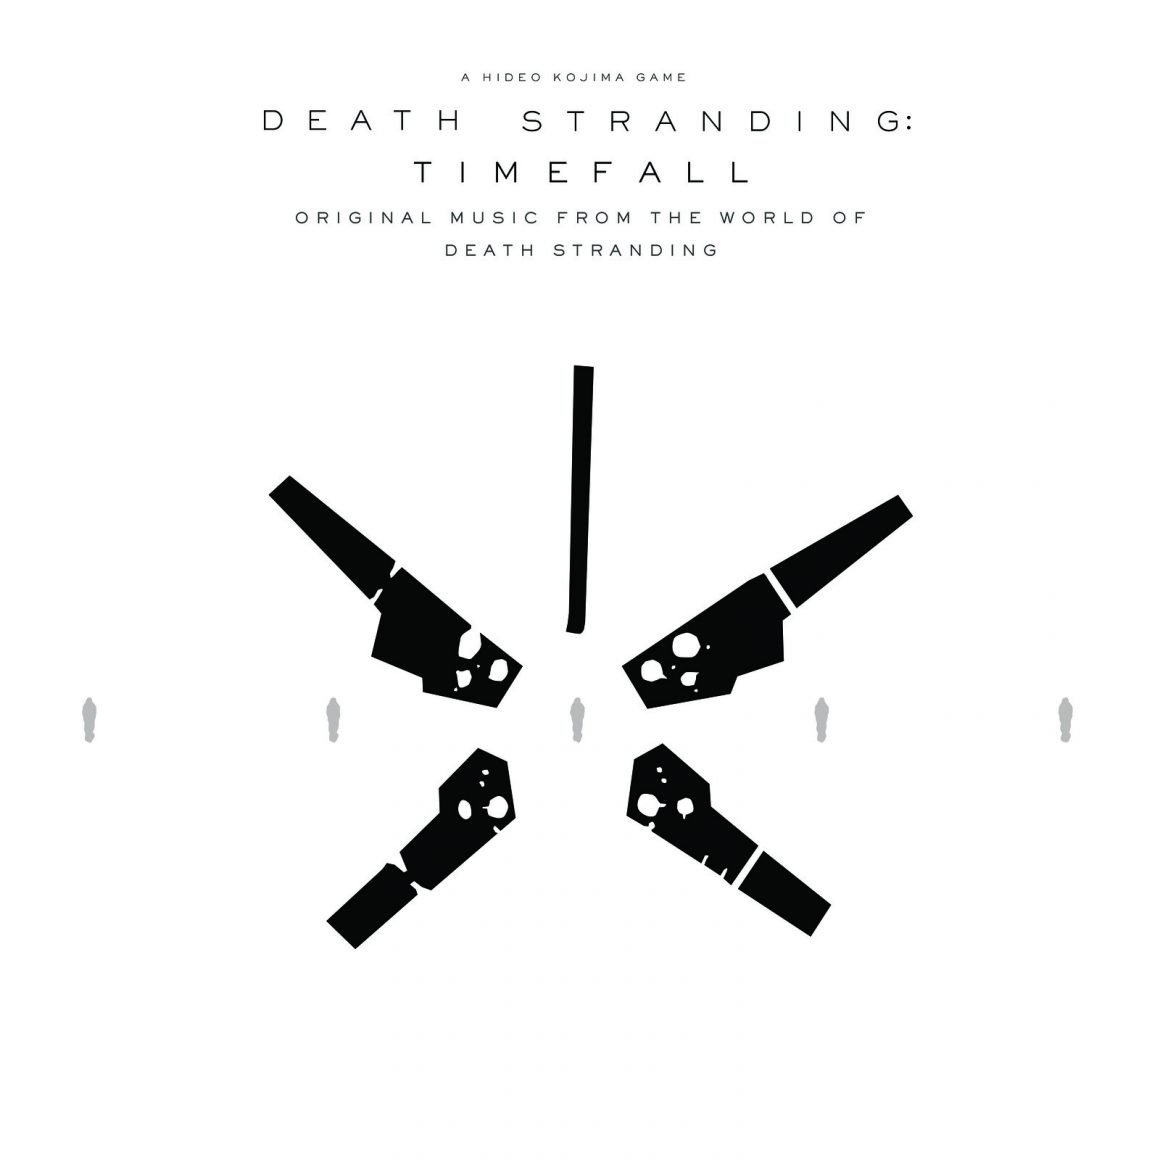 Timefall album cover for standalone album alongside Death Stranding